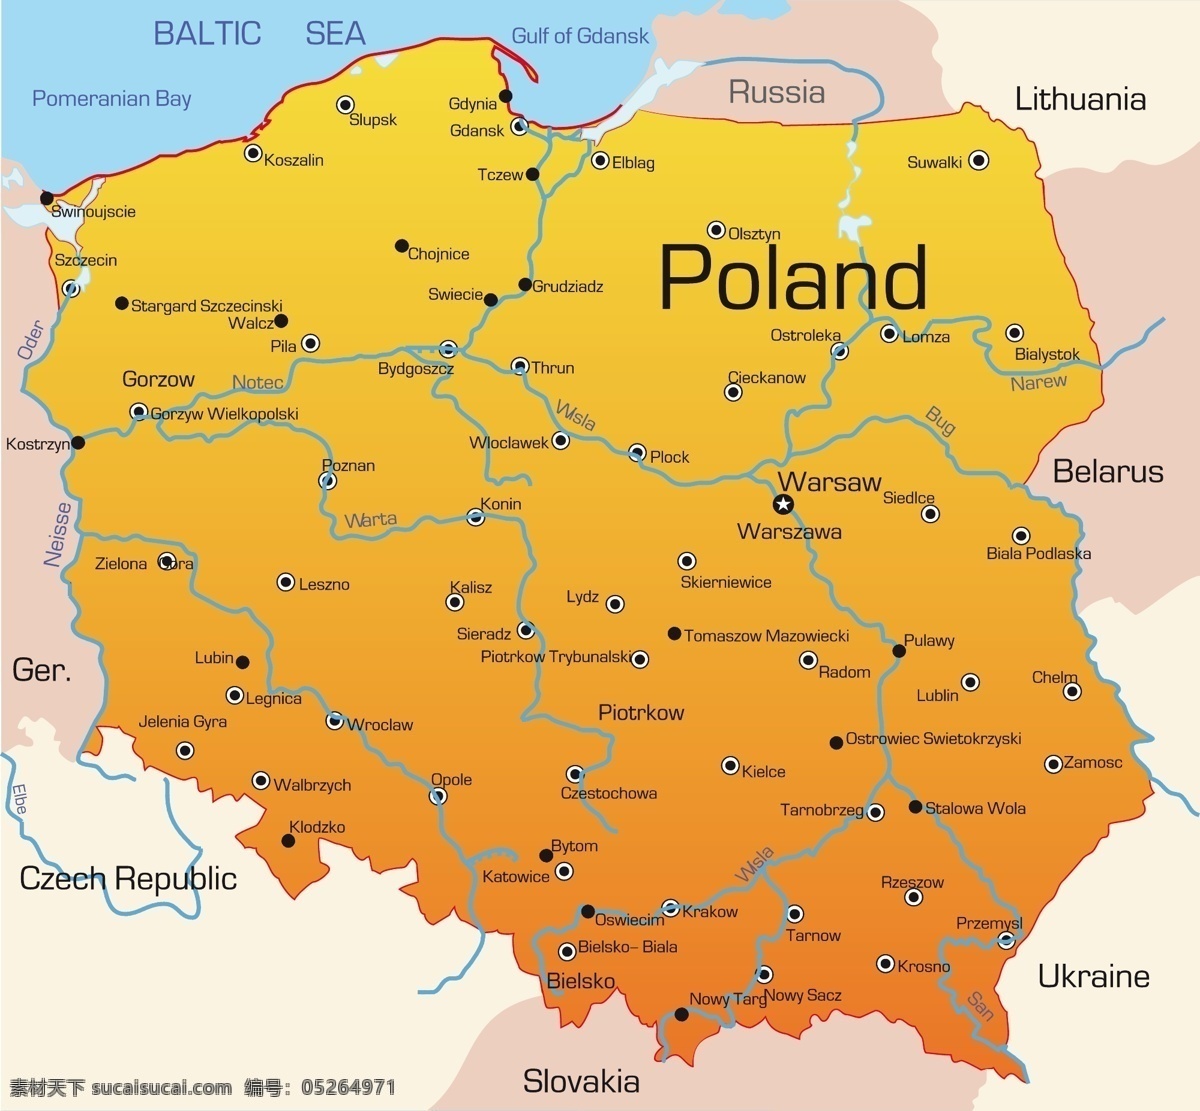 东欧 地理 地图 矢量 图 罗马尼亚 矢量素材 摩尔多瓦 波兰 捷克共和国 斯洛伐克 匈牙利 其他载体 矢量图 其他矢量图